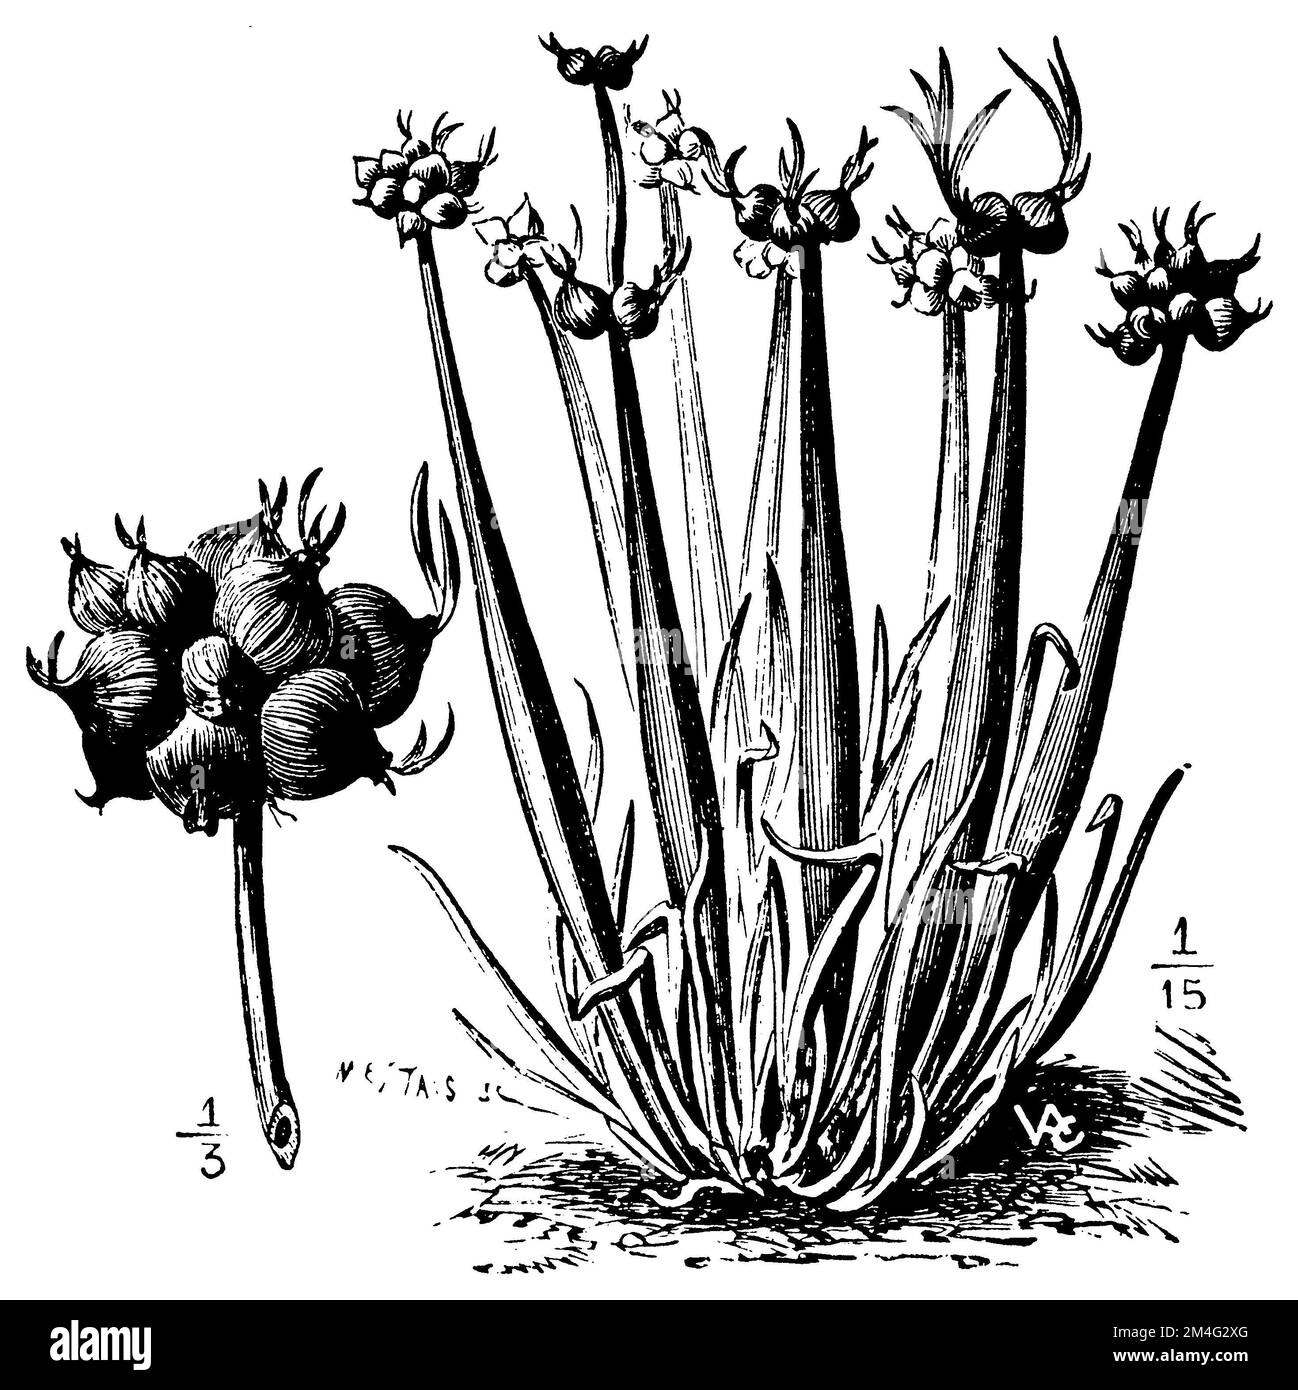 sand leek, Allium scorodoprasum,  (printing pattern book, 1911), Schlangen-Lauch, ail rocambole Stock Photo